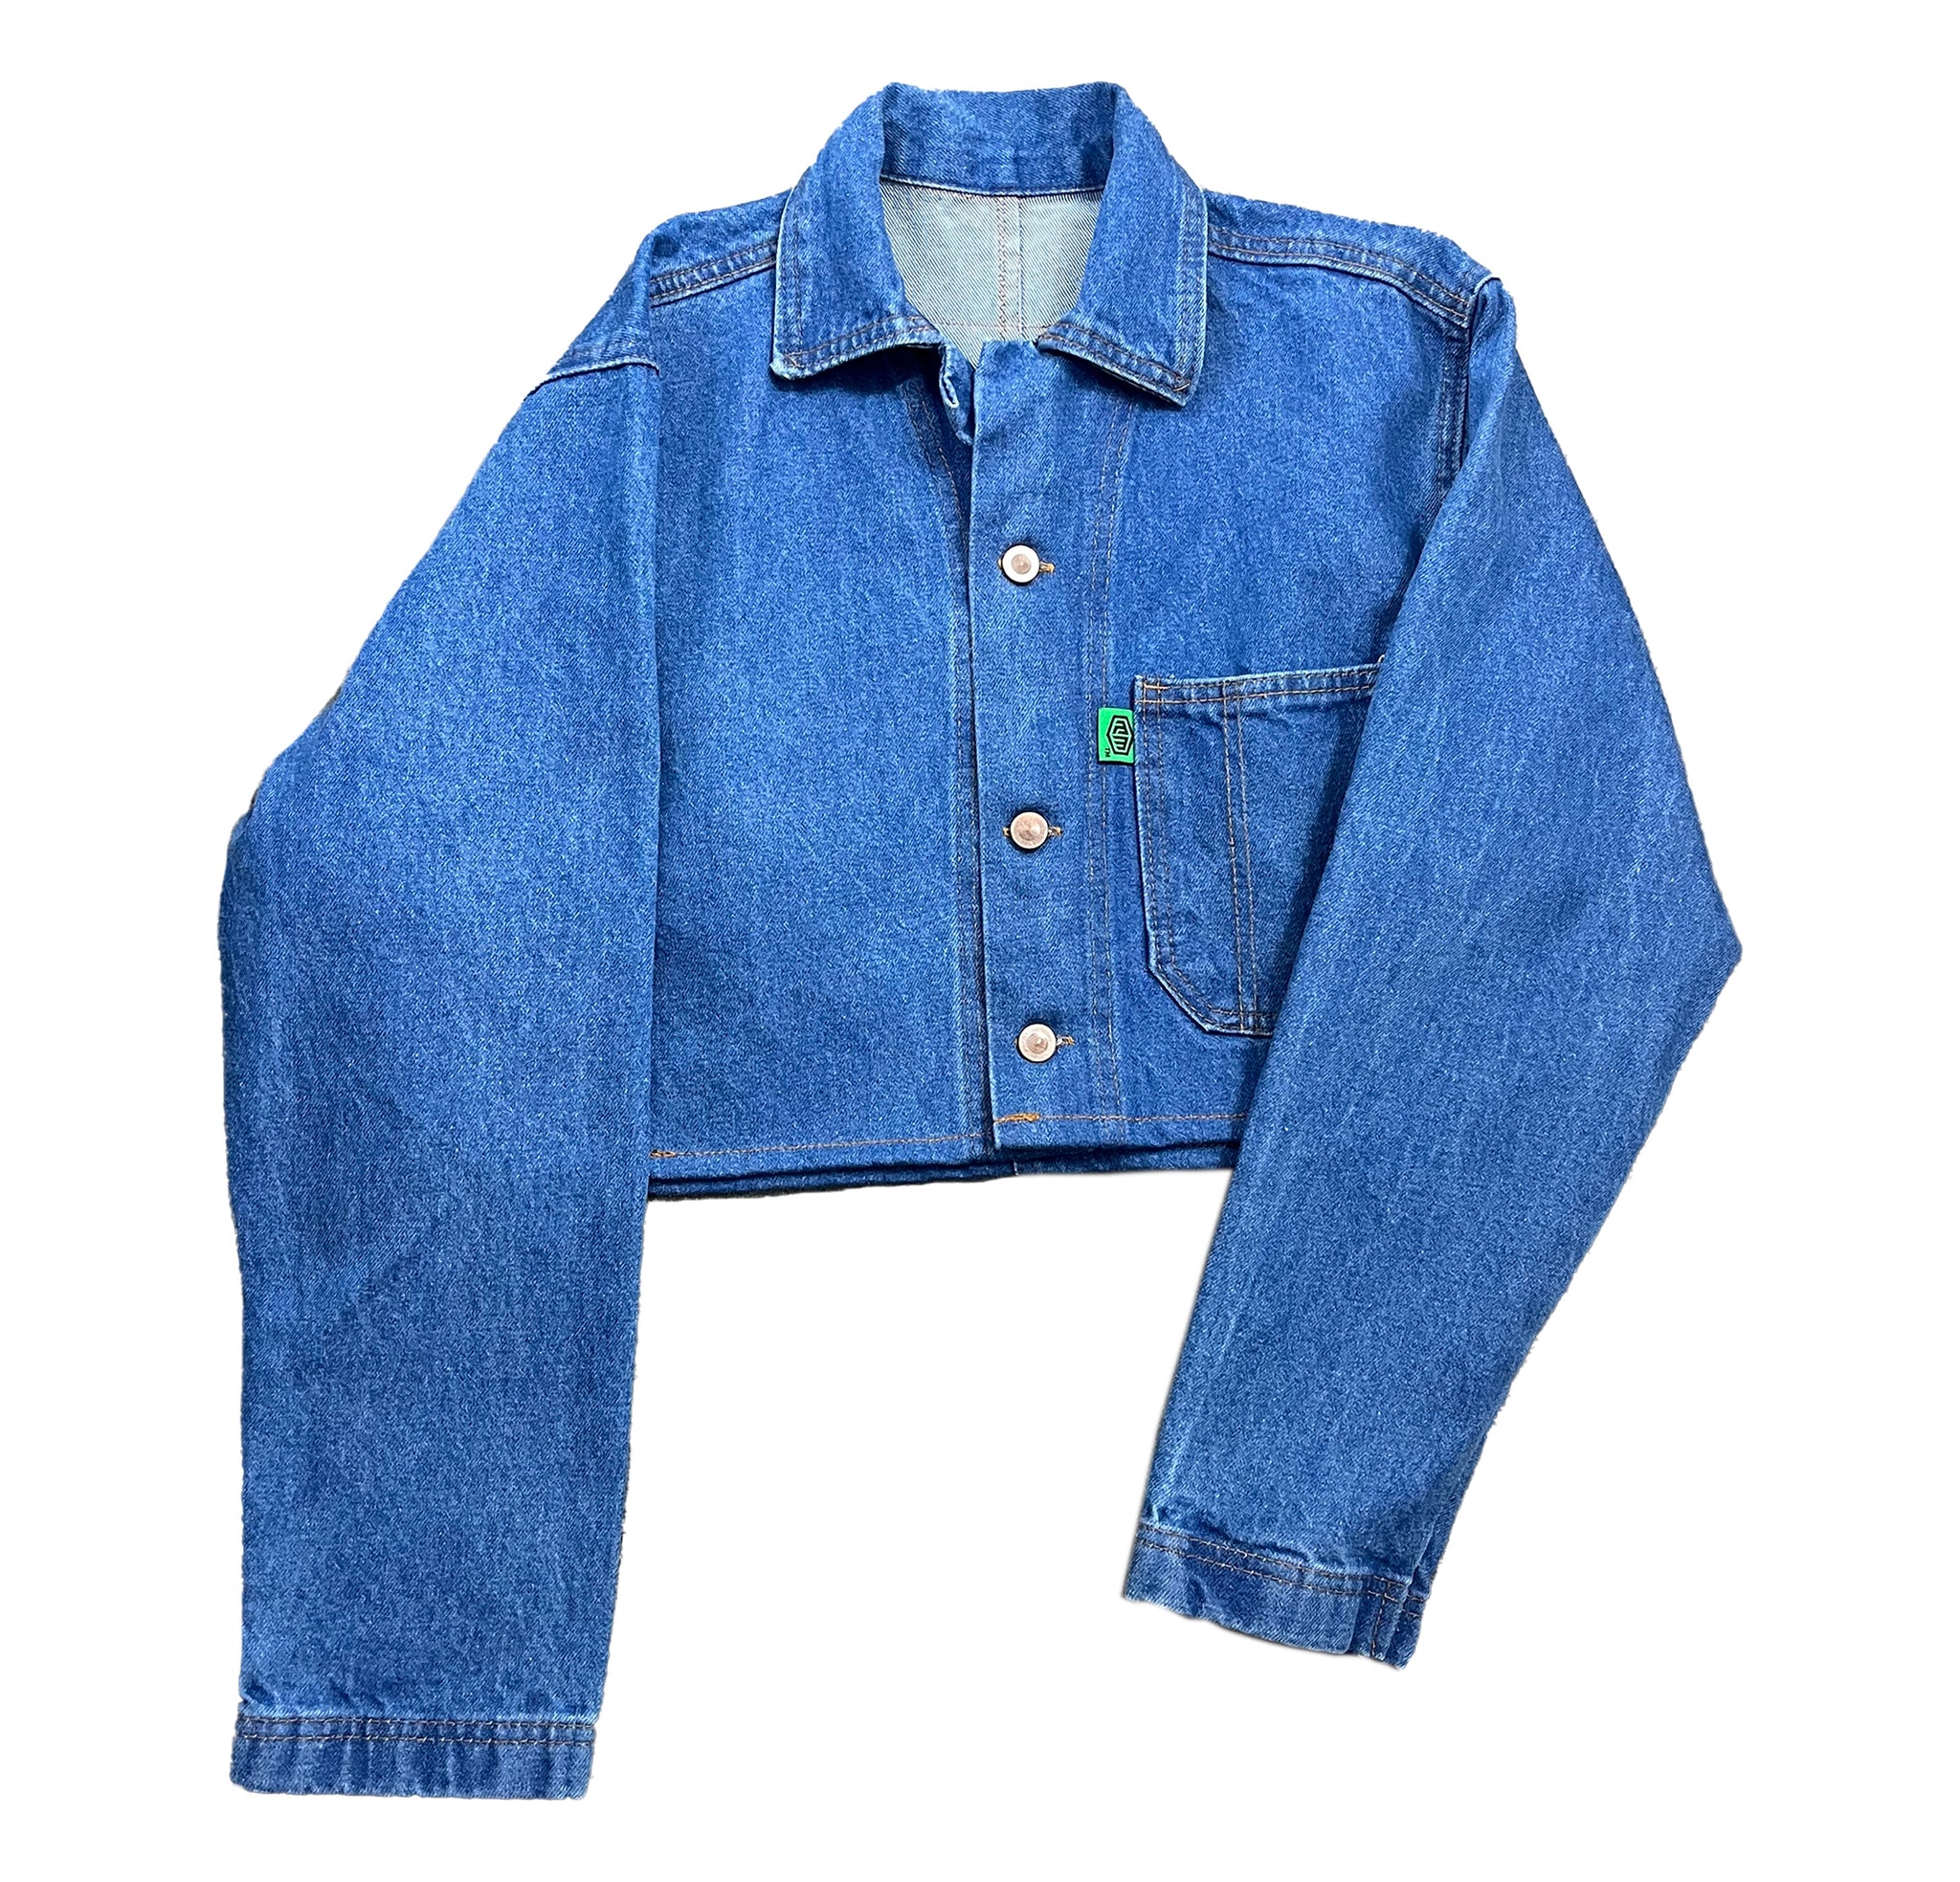 Basic denim jacket - cropped (classic blue)